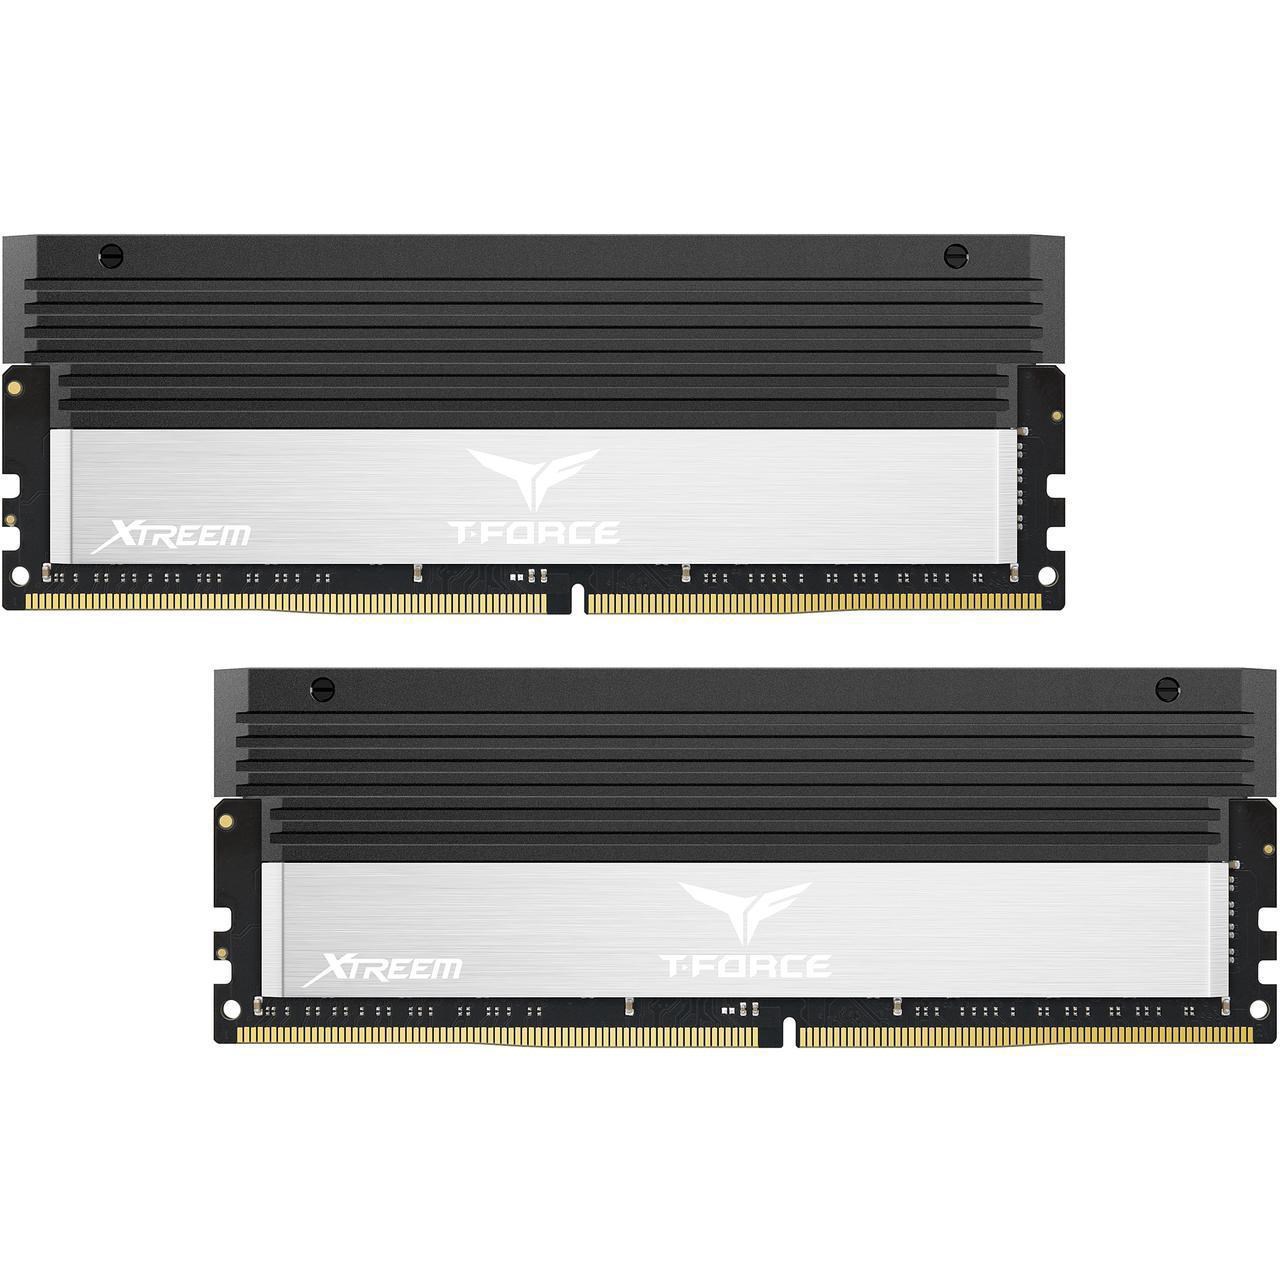 رم دسکتاپ DDR4 دو کاناله 4000 مگاهرتز CL18 تیم گروپ مدل T-Force XTREEM ظرفیت 16 گیگابایت